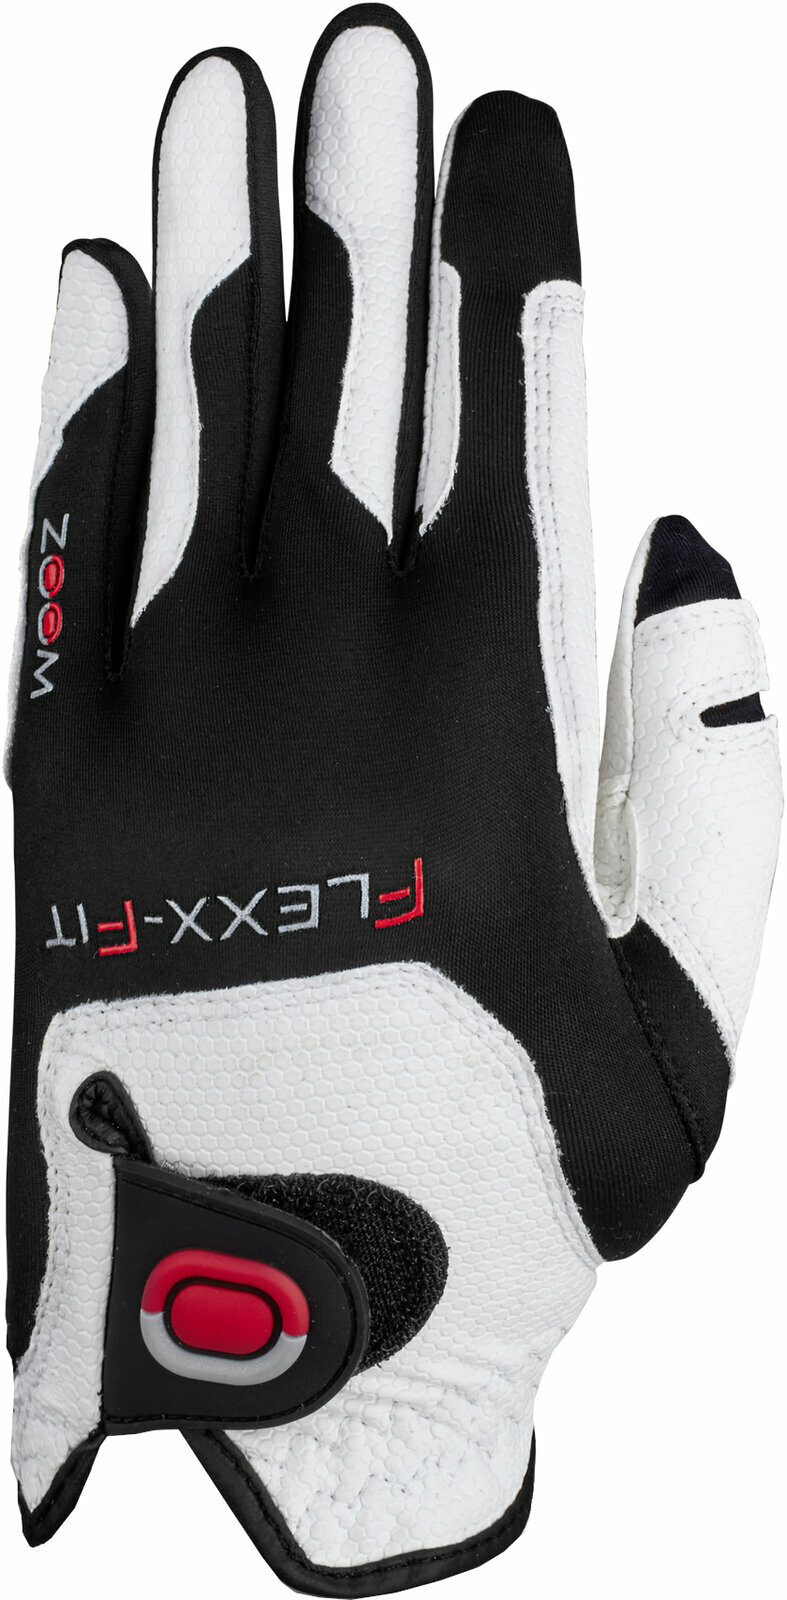 Handschoenen Zoom Gloves Weather Junior Golf Glove Handschoenen